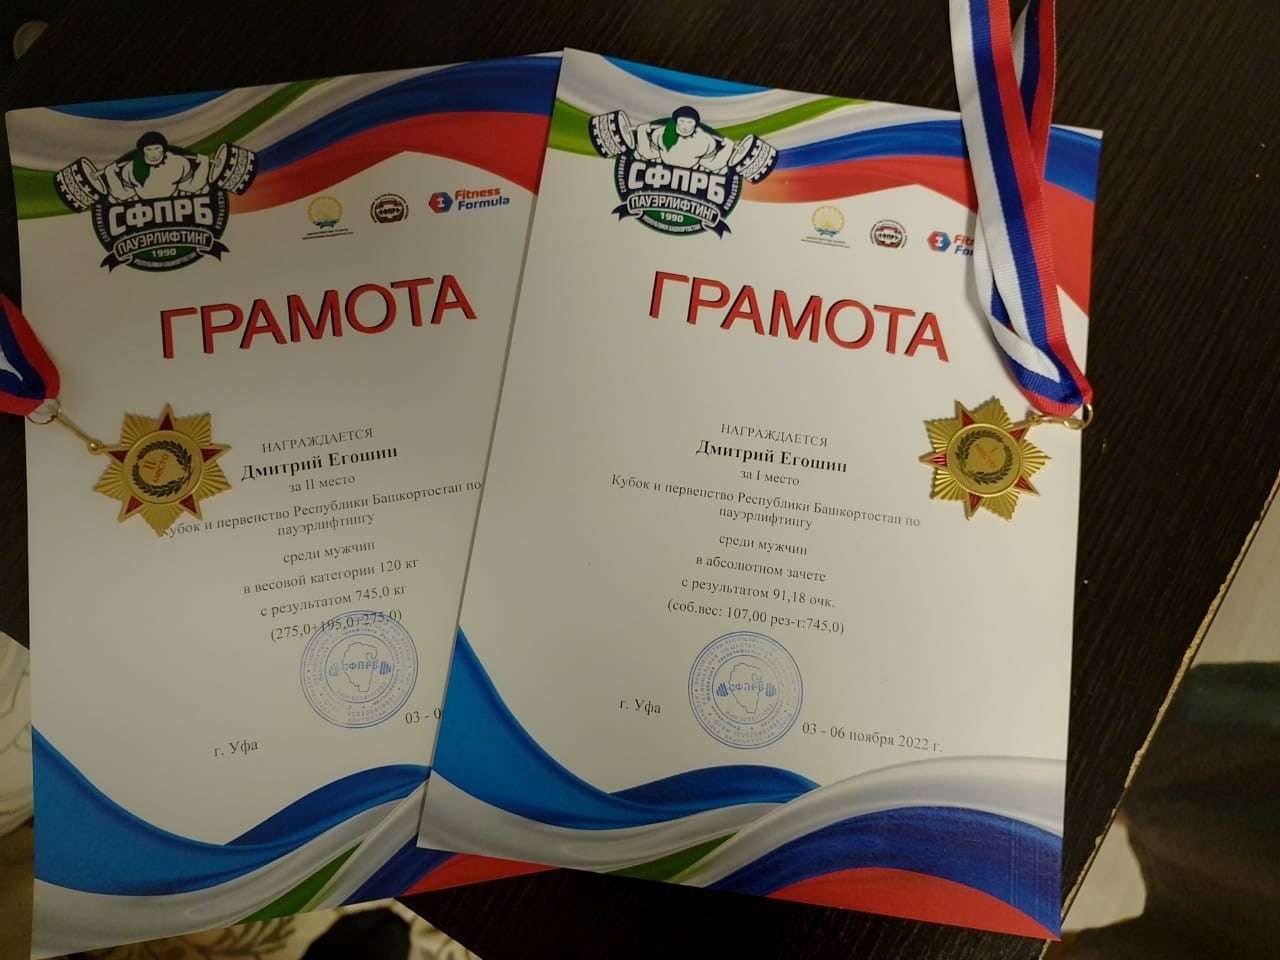 С 3 по 6 ноября 2022 года в Уфе прошёл Кубок и первенство Республики Башкортостан по пауэрлифтингу среди мужчин